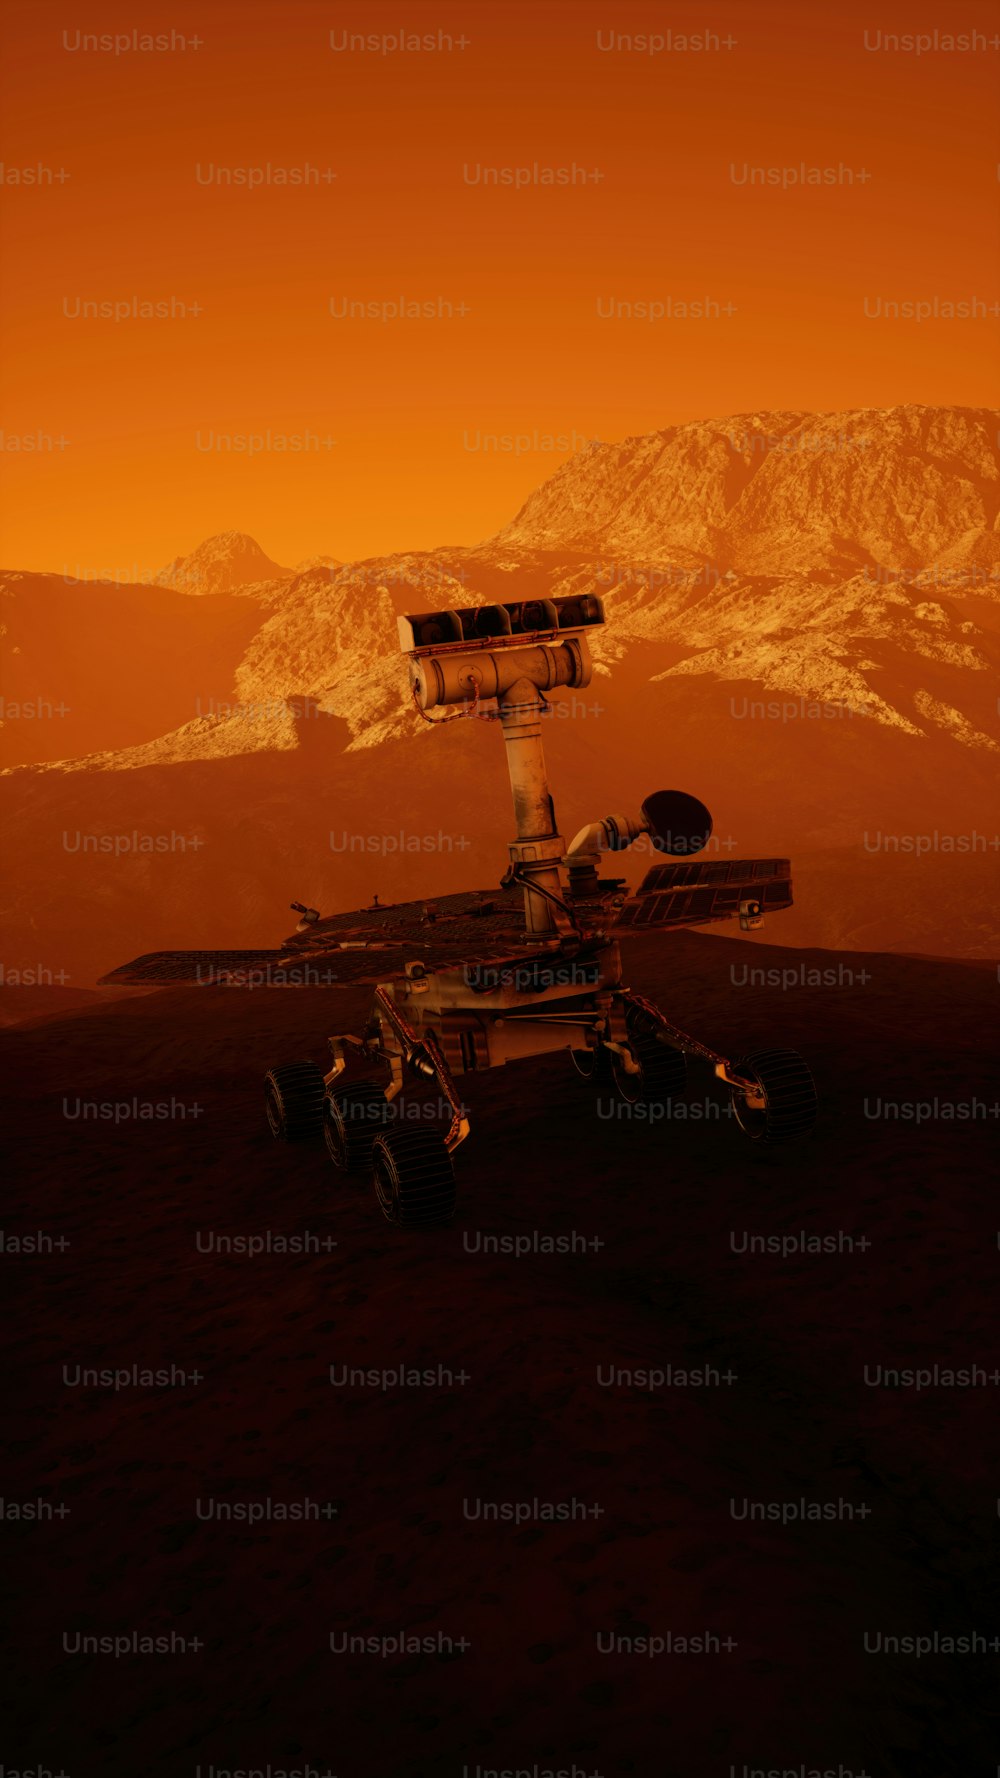 Una imagen generada por computadora de una estación espacial en el desierto